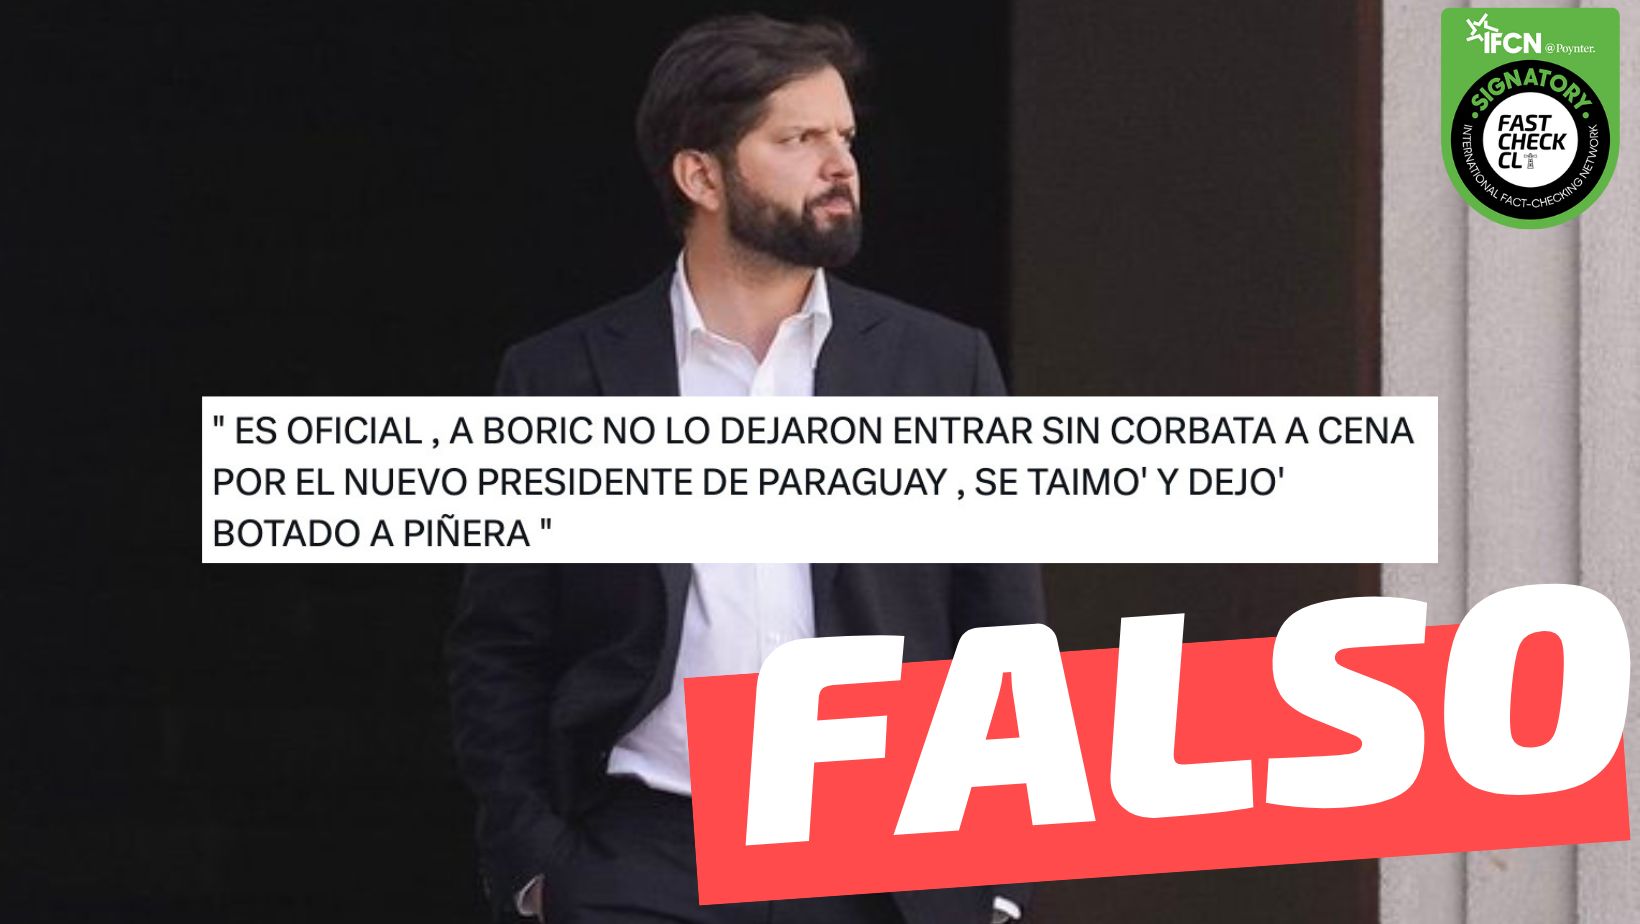 You are currently viewing “A Boric no lo dejaron entrar sin corbata a la cena del nuevo presidente de Paraguay”: #Falso